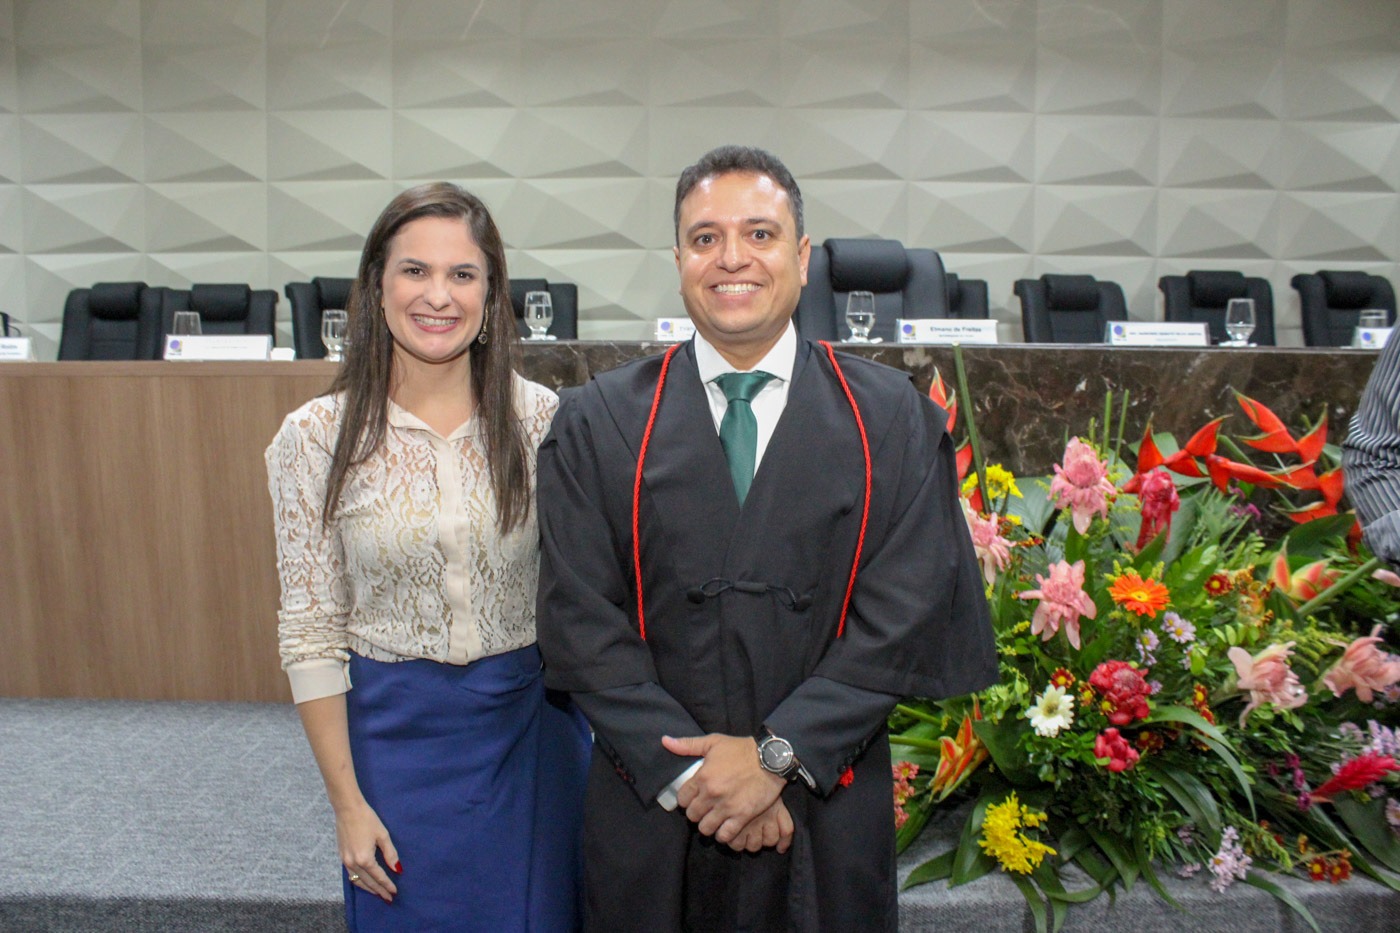 Defensoria participa de solenidade de posse de novo juiz do Tribunal Regional Eleitoral do Ceará